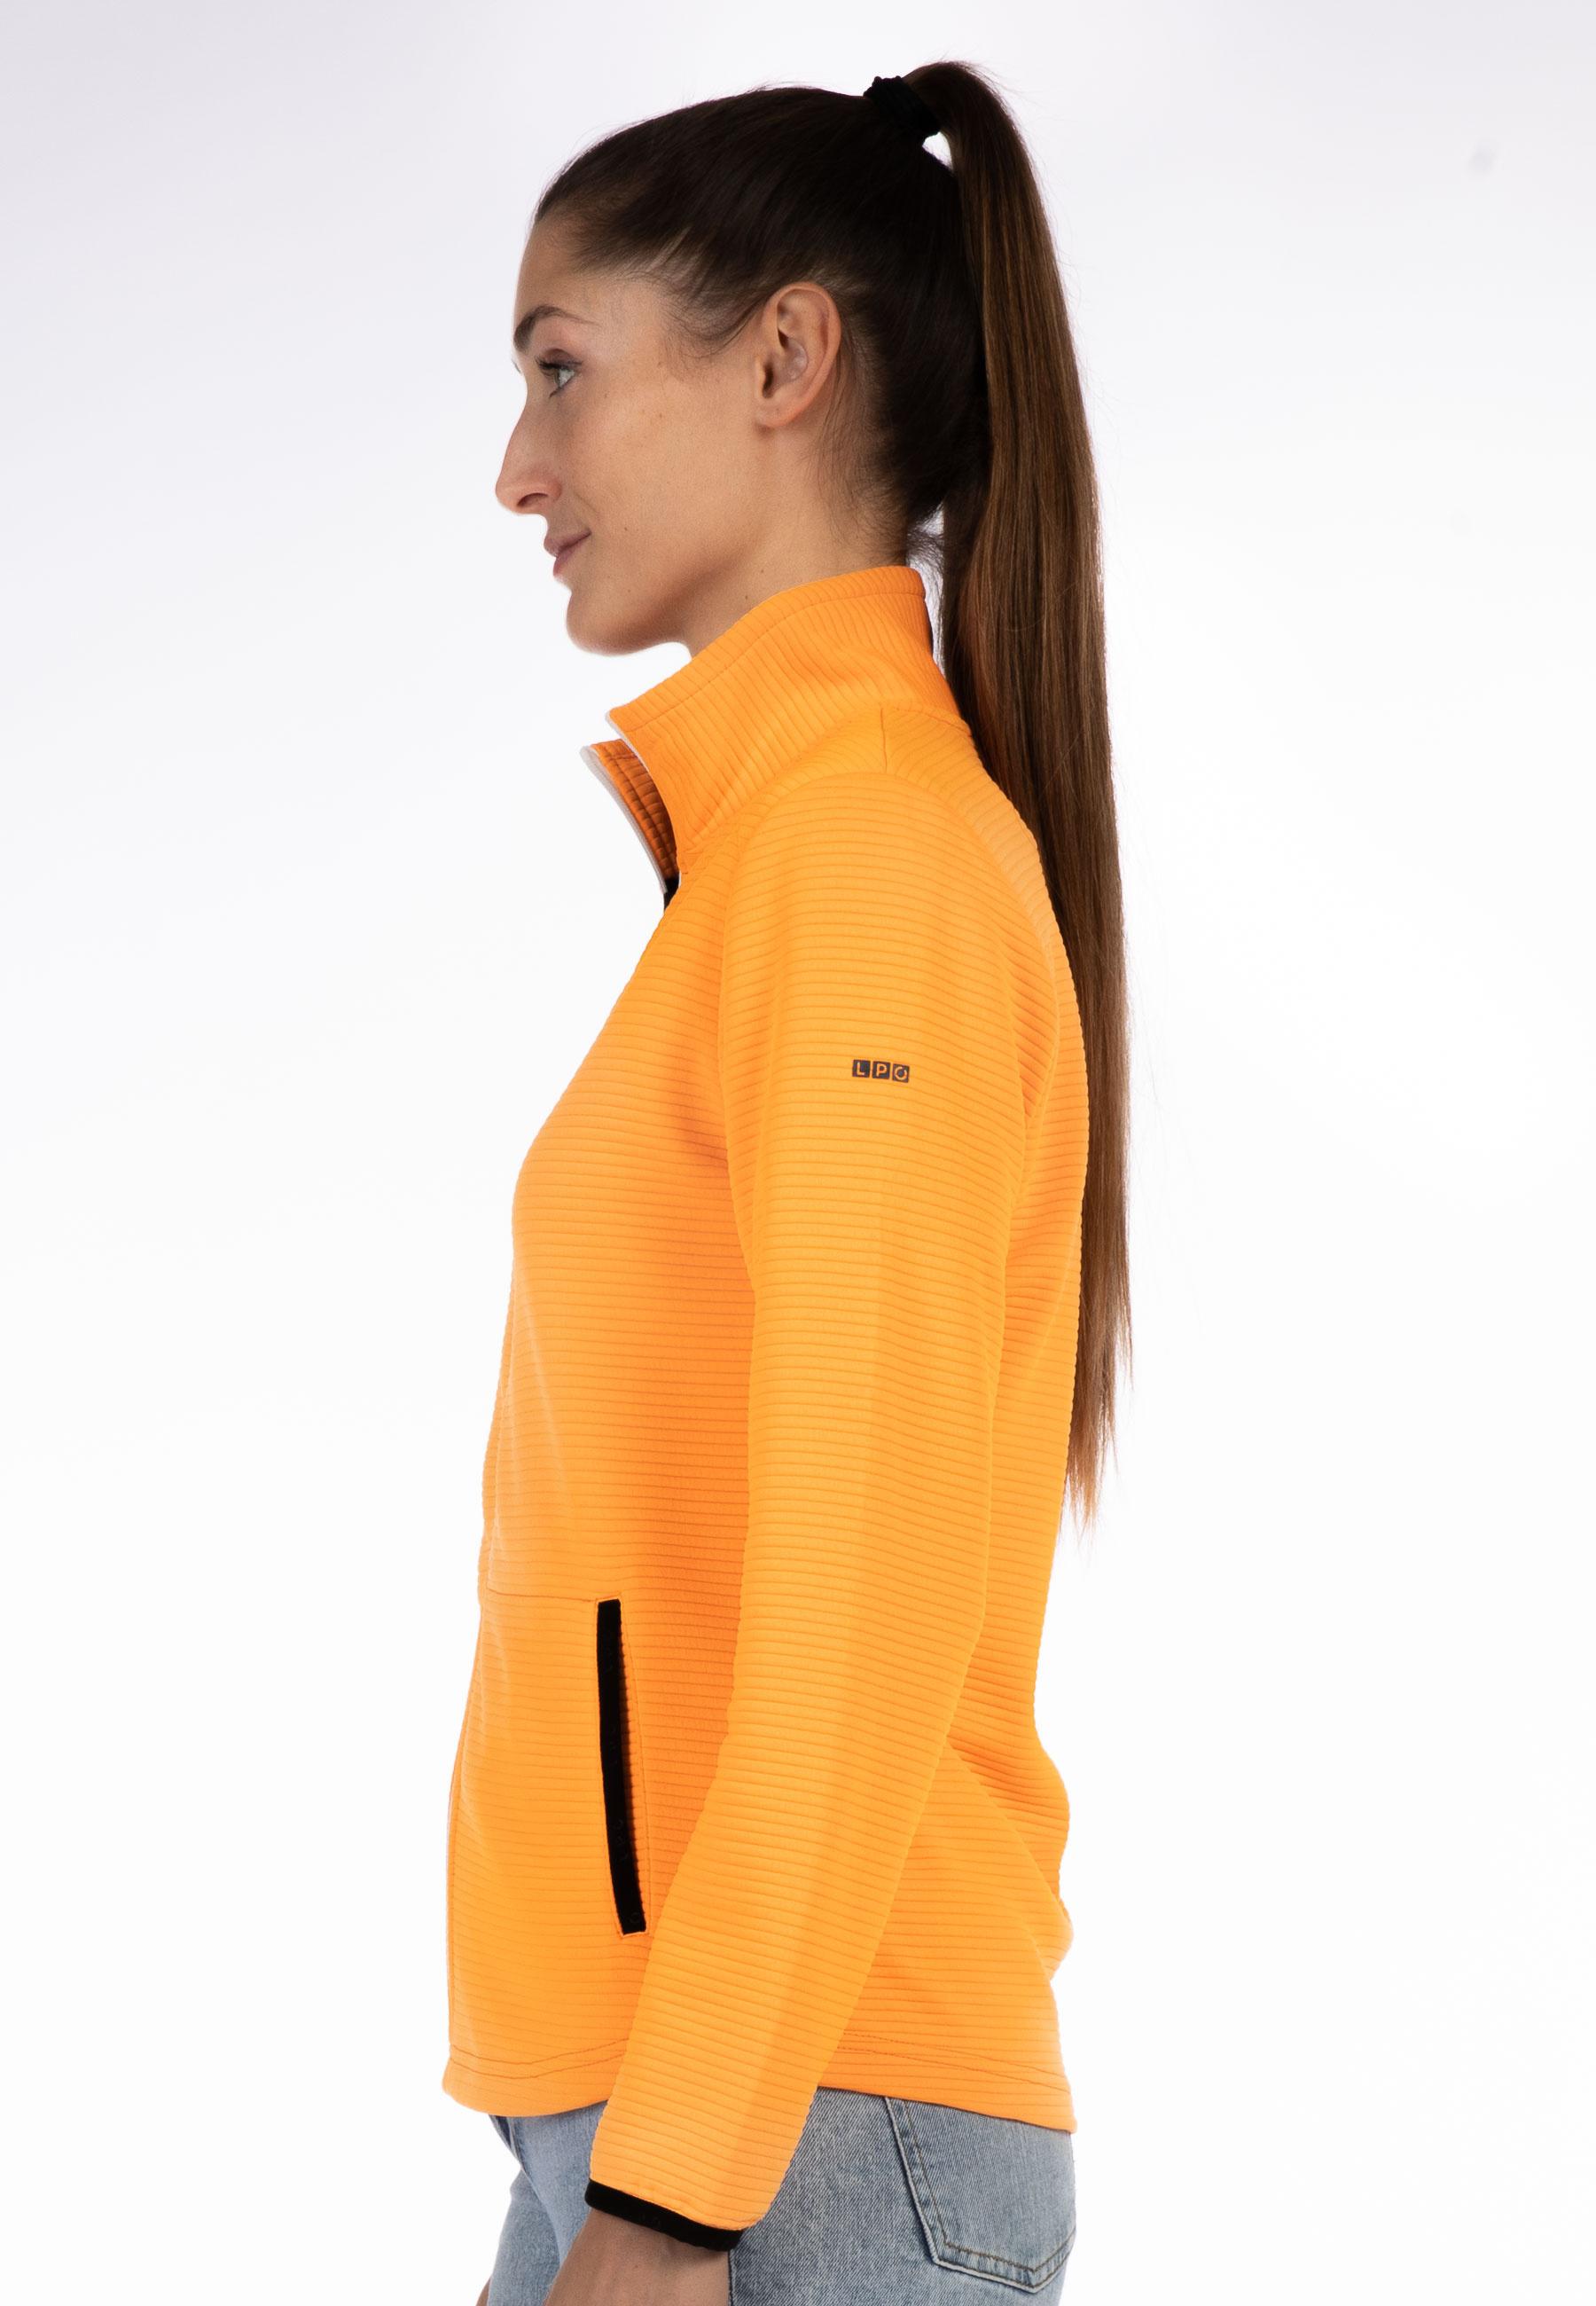 LPO Fleecejacke Damen orange im Online Shop von SportScheck kaufen